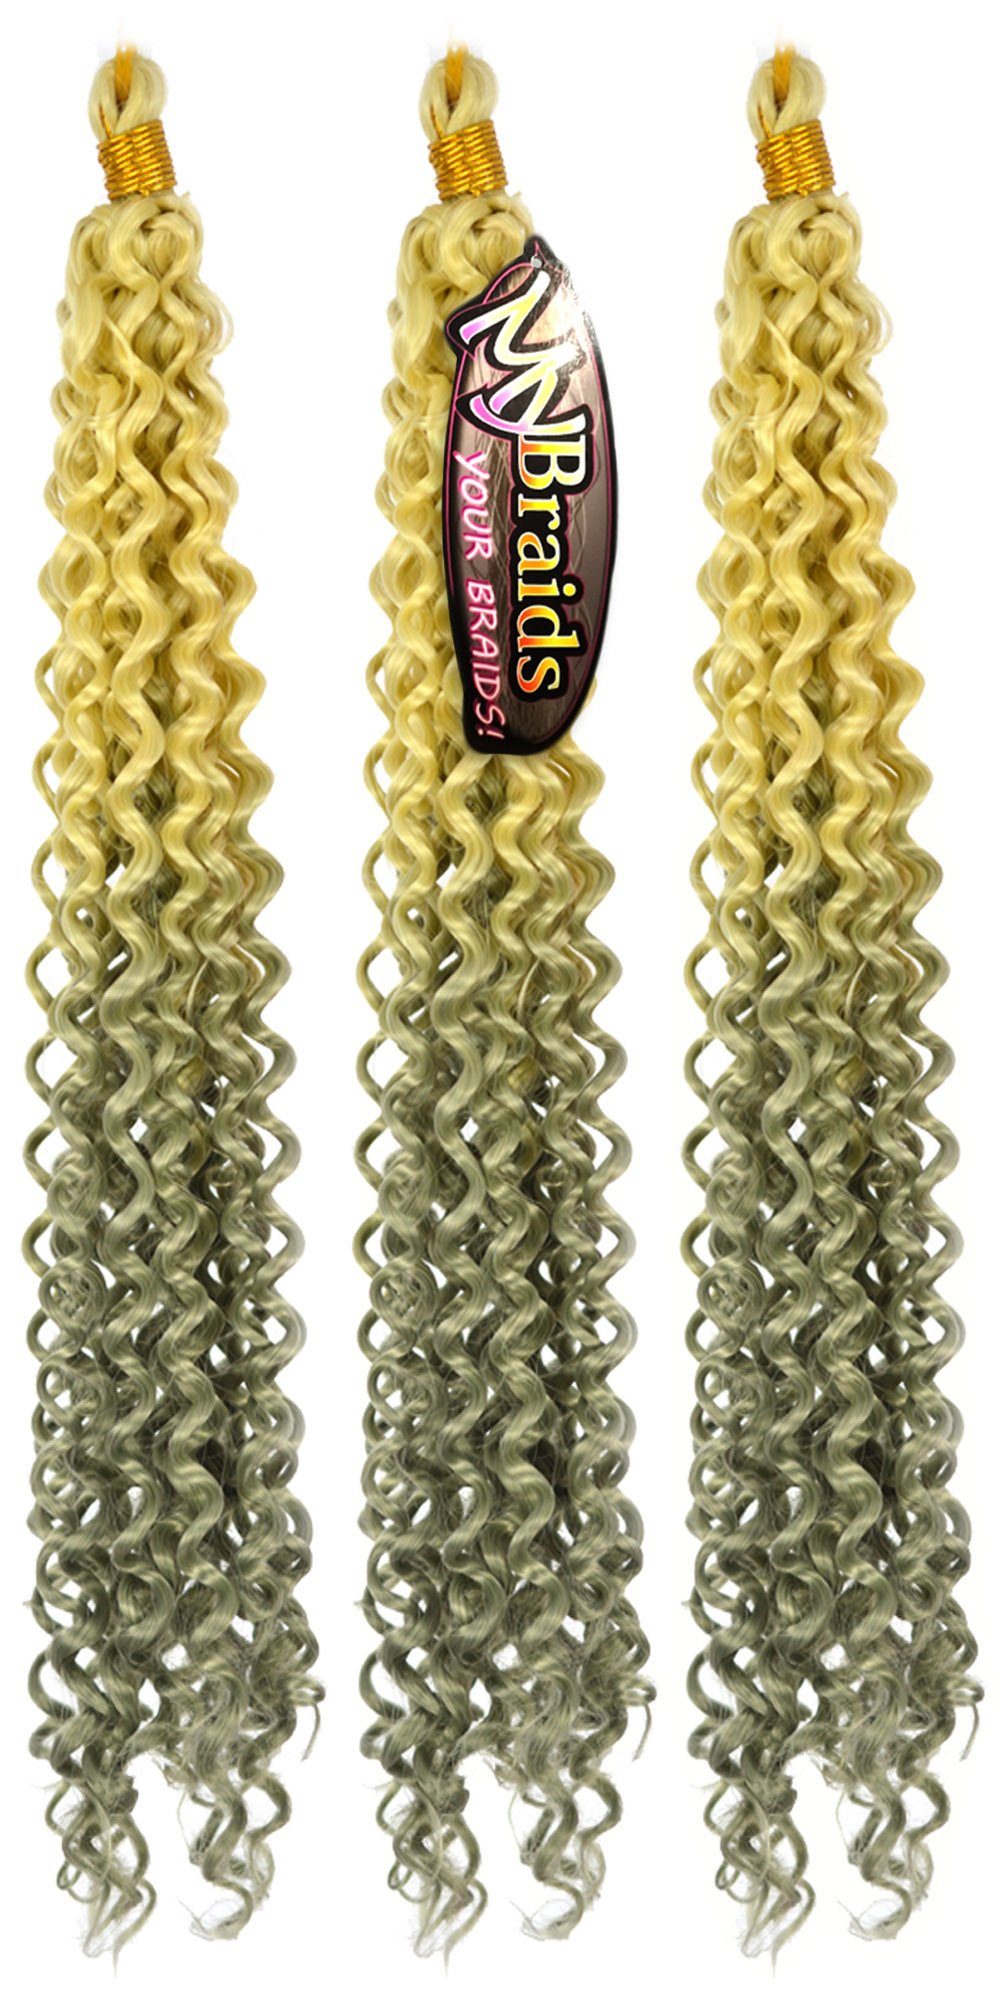 BRAIDS! MyBraids Wave Braids 18-WS 3er Ombre Crochet Kunsthaar-Extension Pack Zöpfe Flechthaar YOUR Deep Wellig Hellblond-Grau